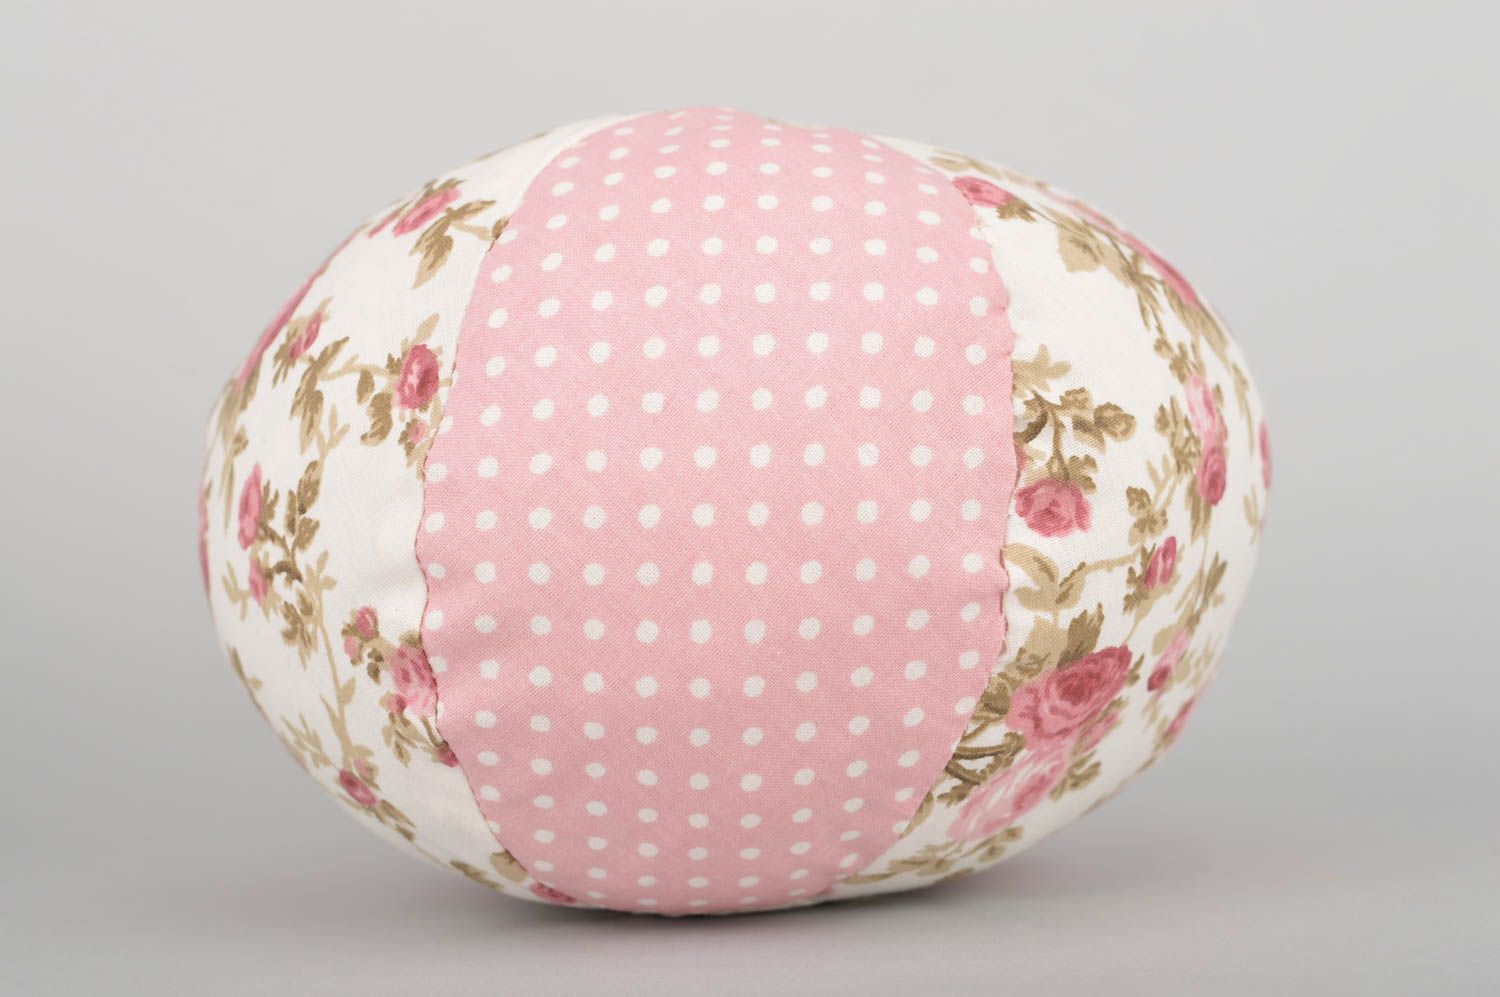 Мягкая игрушка мячик из ткани ручной работы в розовых тонах красивый нежный фото 2